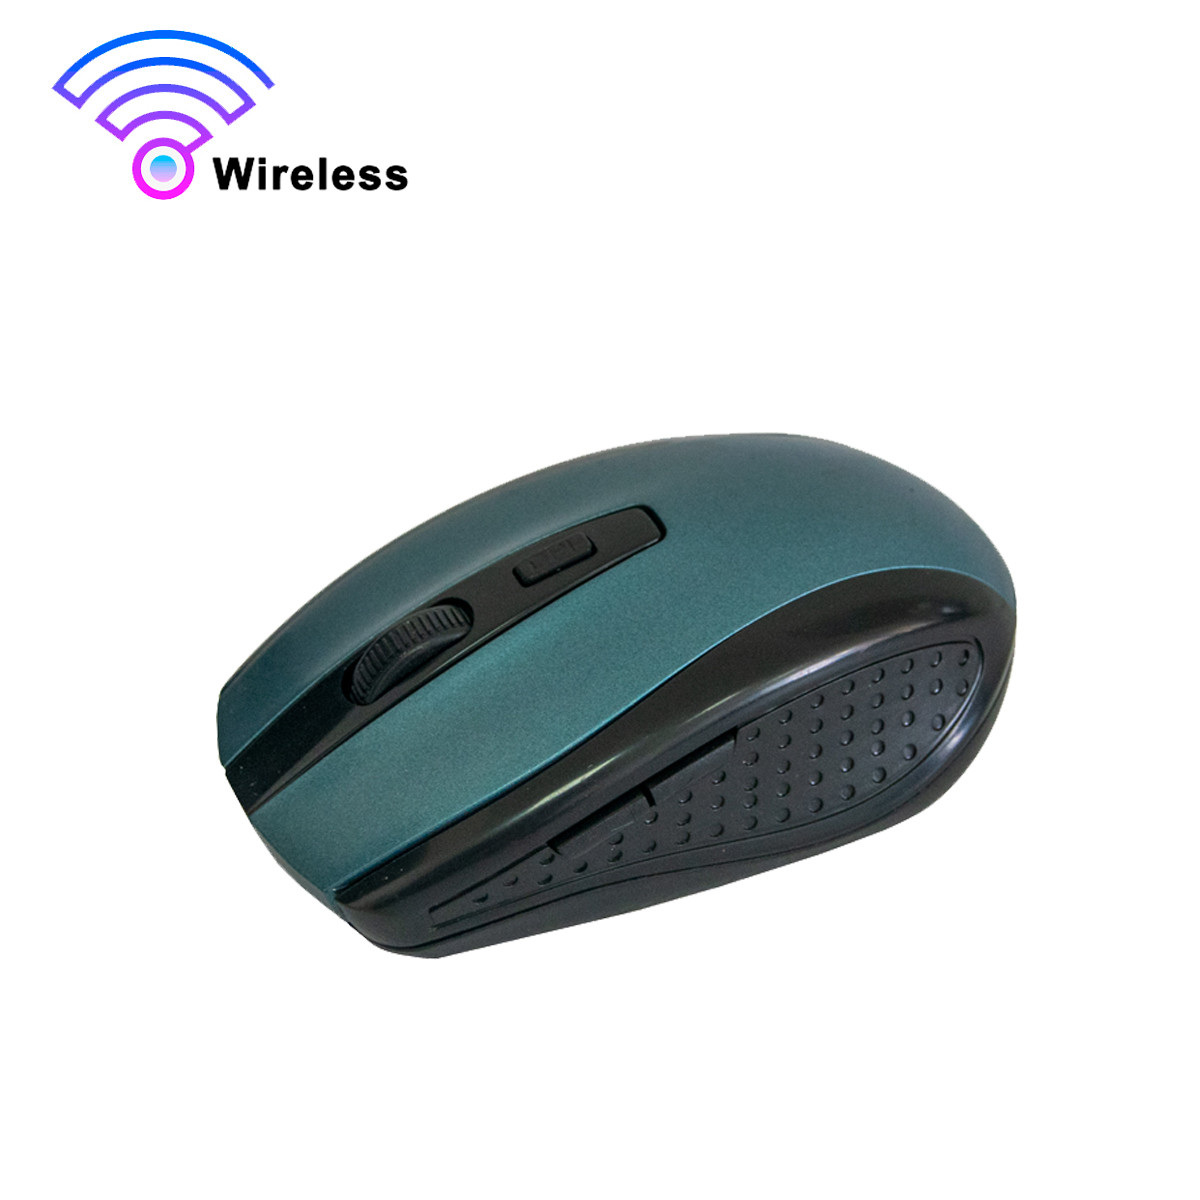 Мишка бездротова для ПК Mouse G109 Wireless Темно-синя мишка для ноутбуків з USB адаптером, фото 1